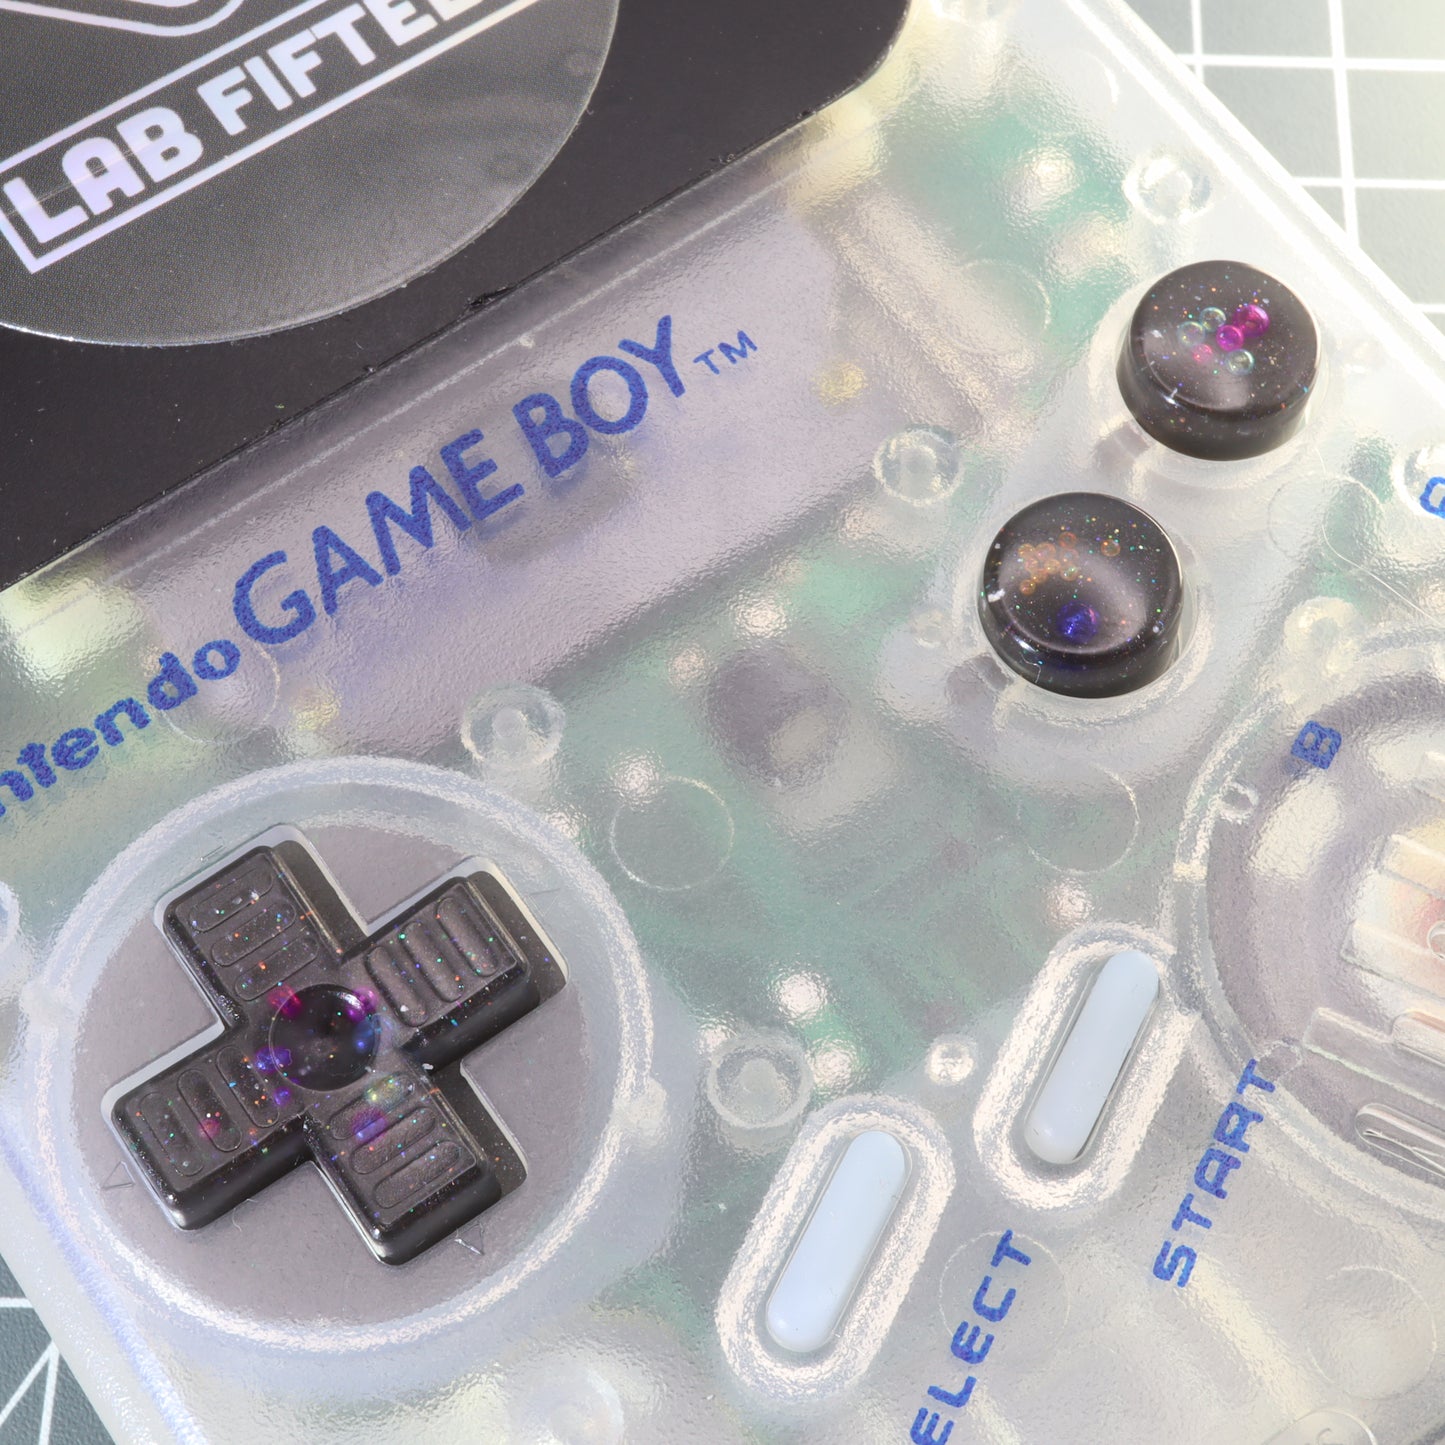 Game Boy DMG - Custom Button - Solar System